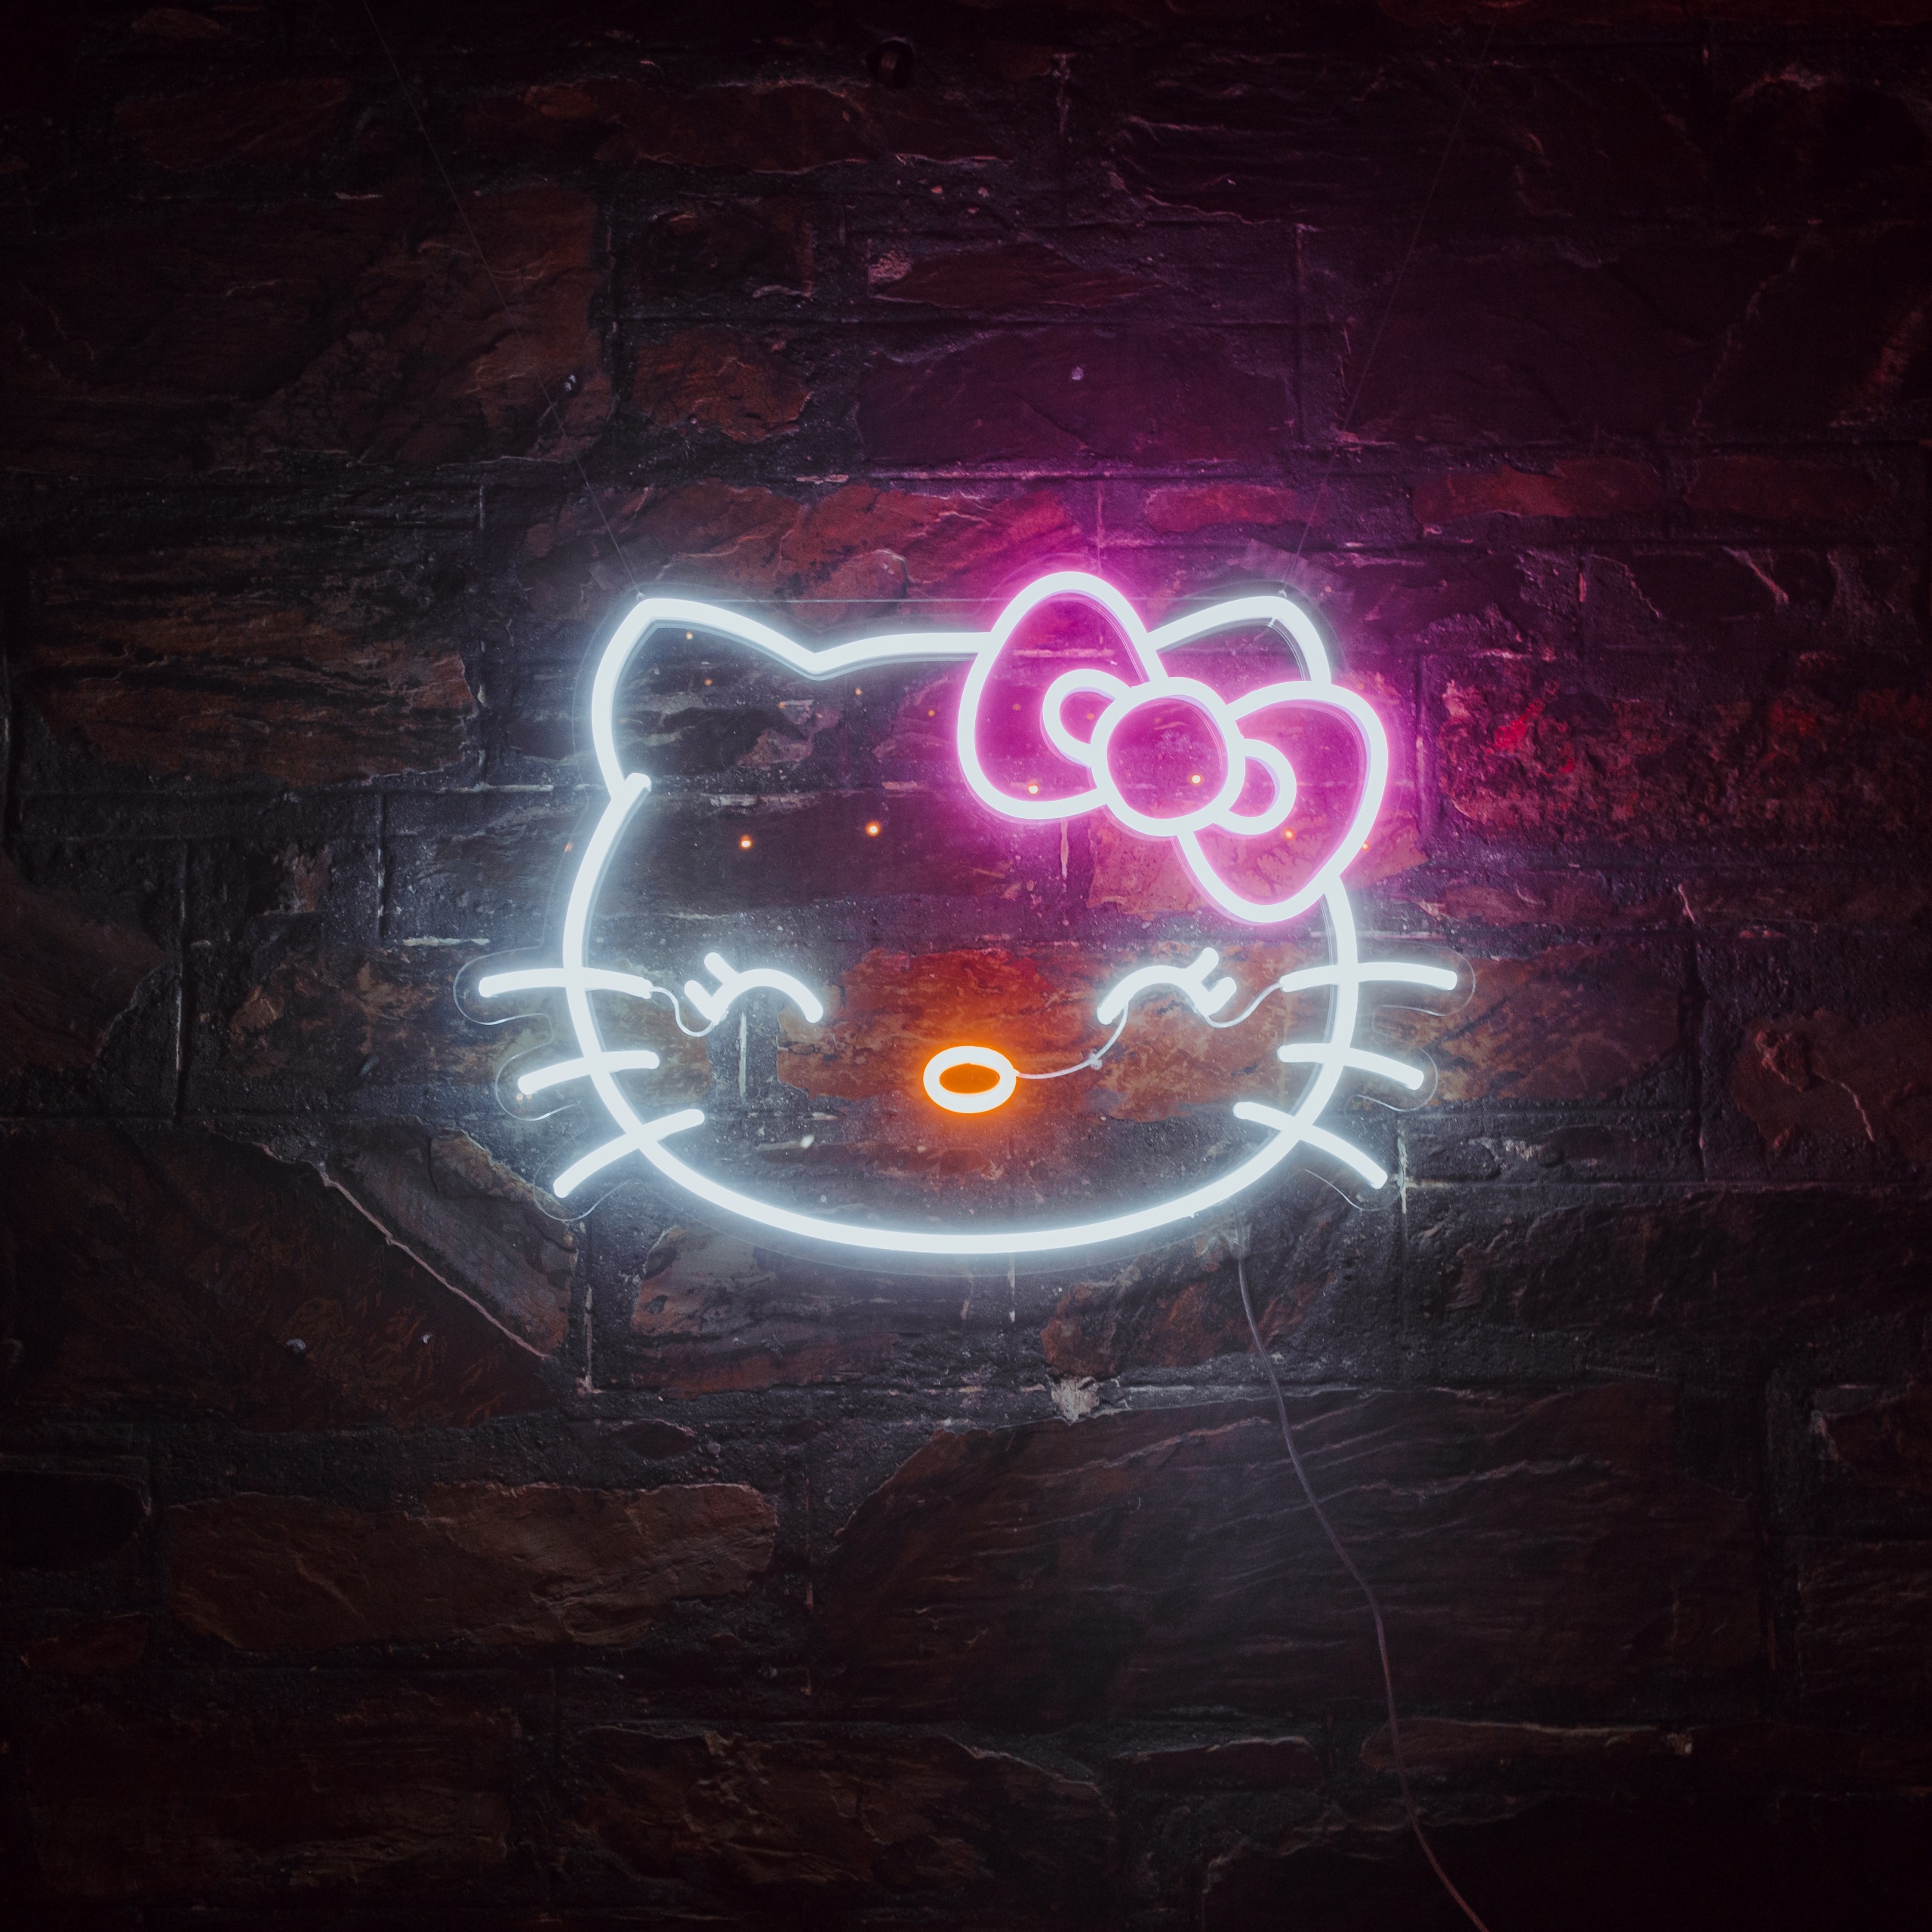 Hình nền Hello Kitty 4K với ánh sáng Neon đầy màu sắc vẫn giữ được nét dễ thương và đáng yêu của chú mèo Hello Kitty. Từ những chi tiết nhỏ, đến những tia neon sáng lấp lánh, tất cả đều tạo nên hình ảnh đẹp đến ngỡ ngàng. Hãy tải xuống hình nền Hello Kitty 4K này để có trải nghiệm tuyệt vời nhất cho điện thoại của bạn.